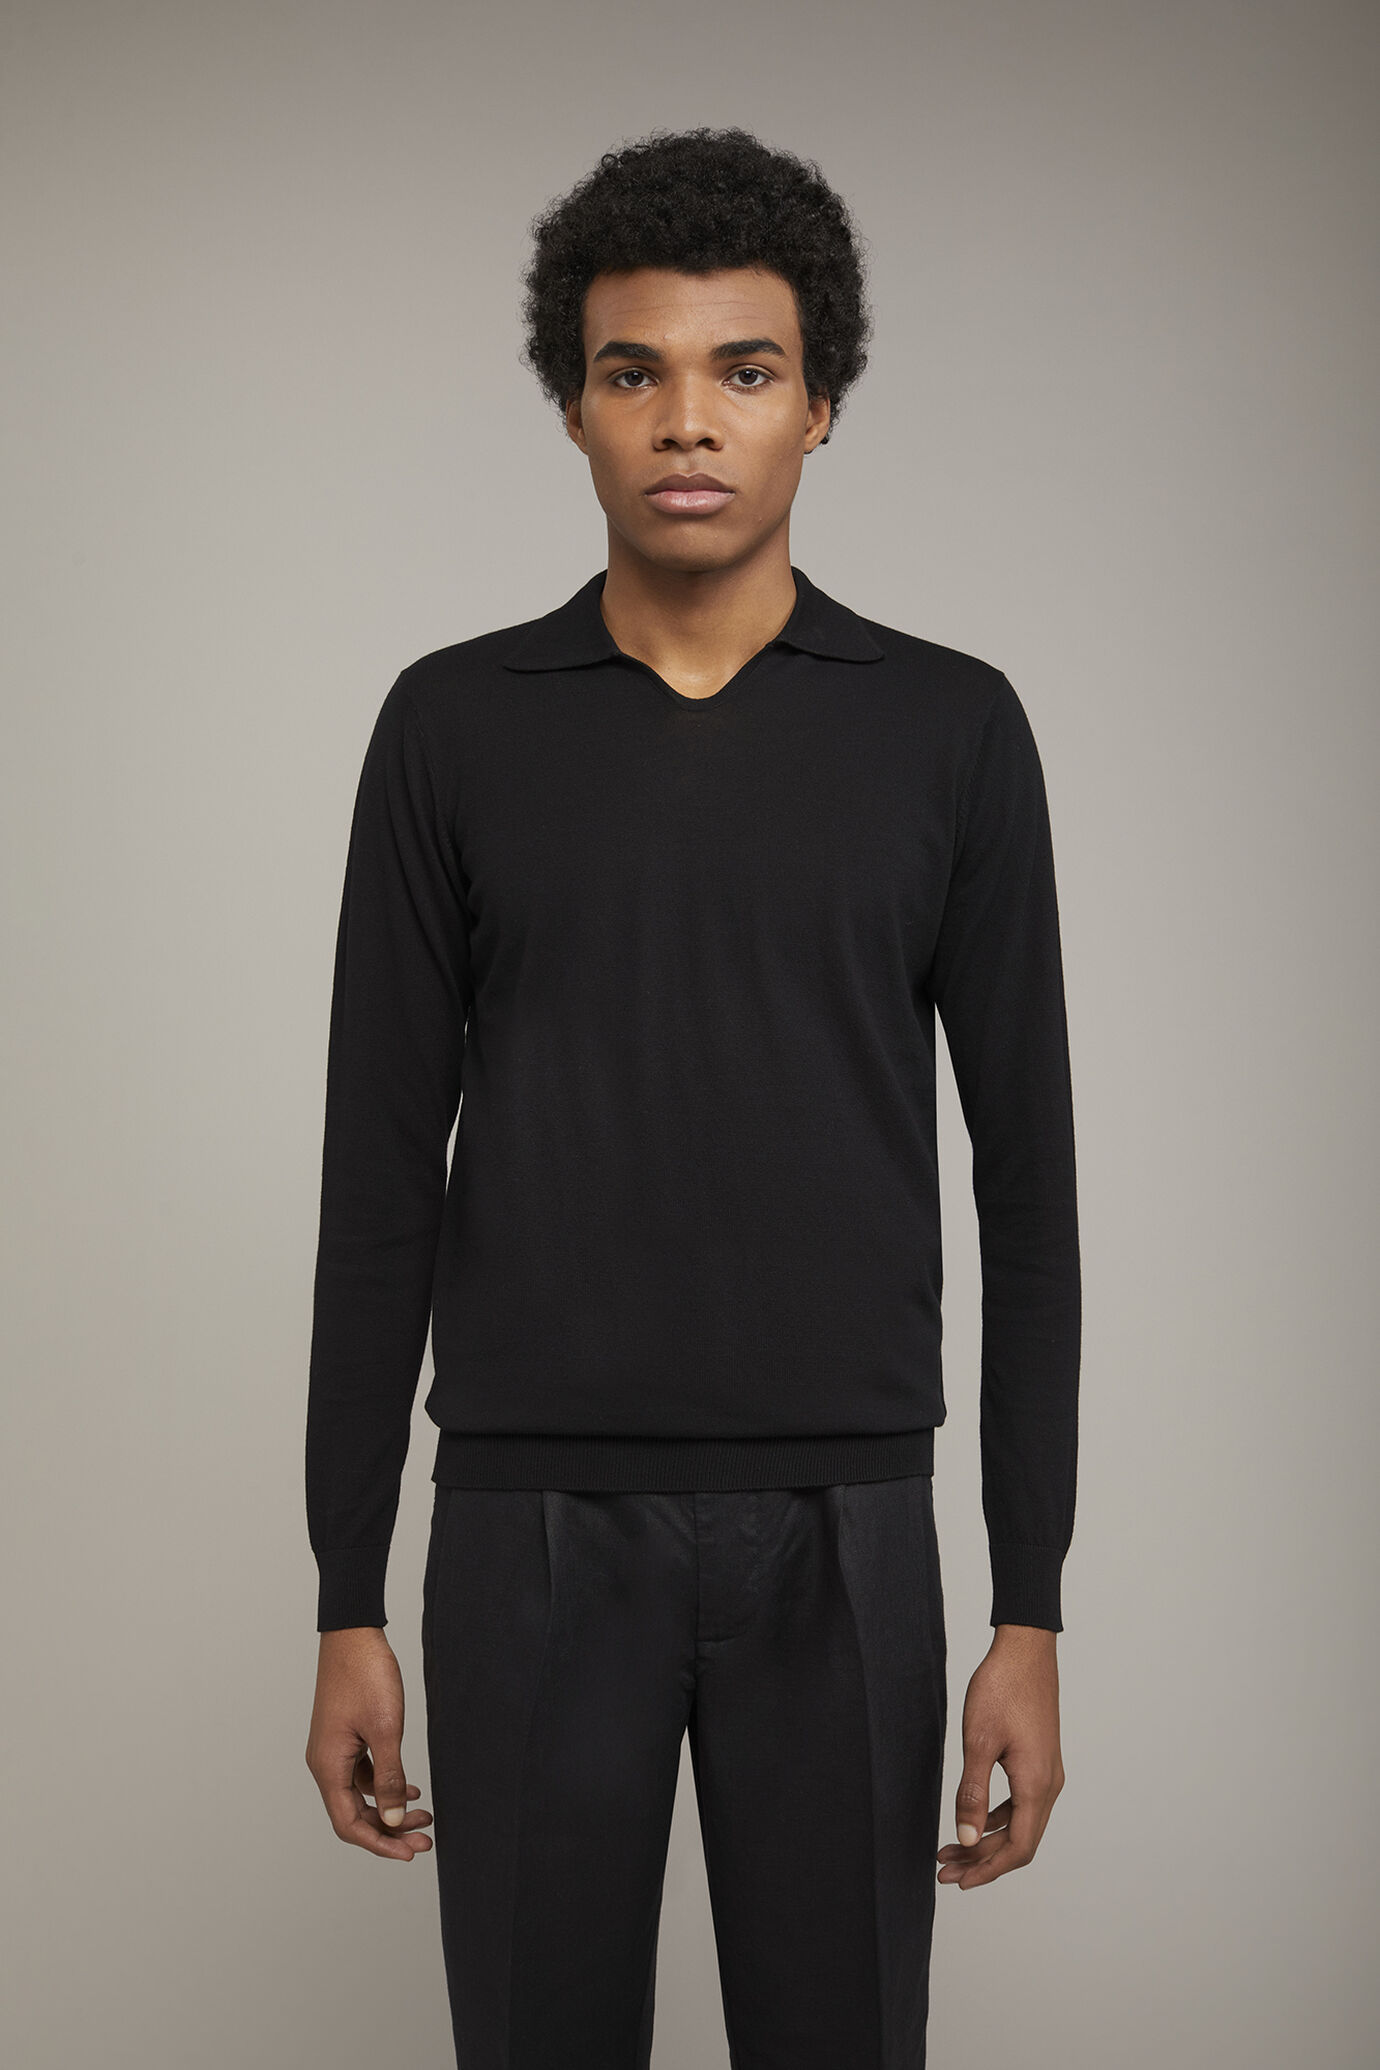 Herren-Poloshirt mit V-Ausschnitt aus 100 % Baumwollstrick und langen Ärmeln in normaler Passform